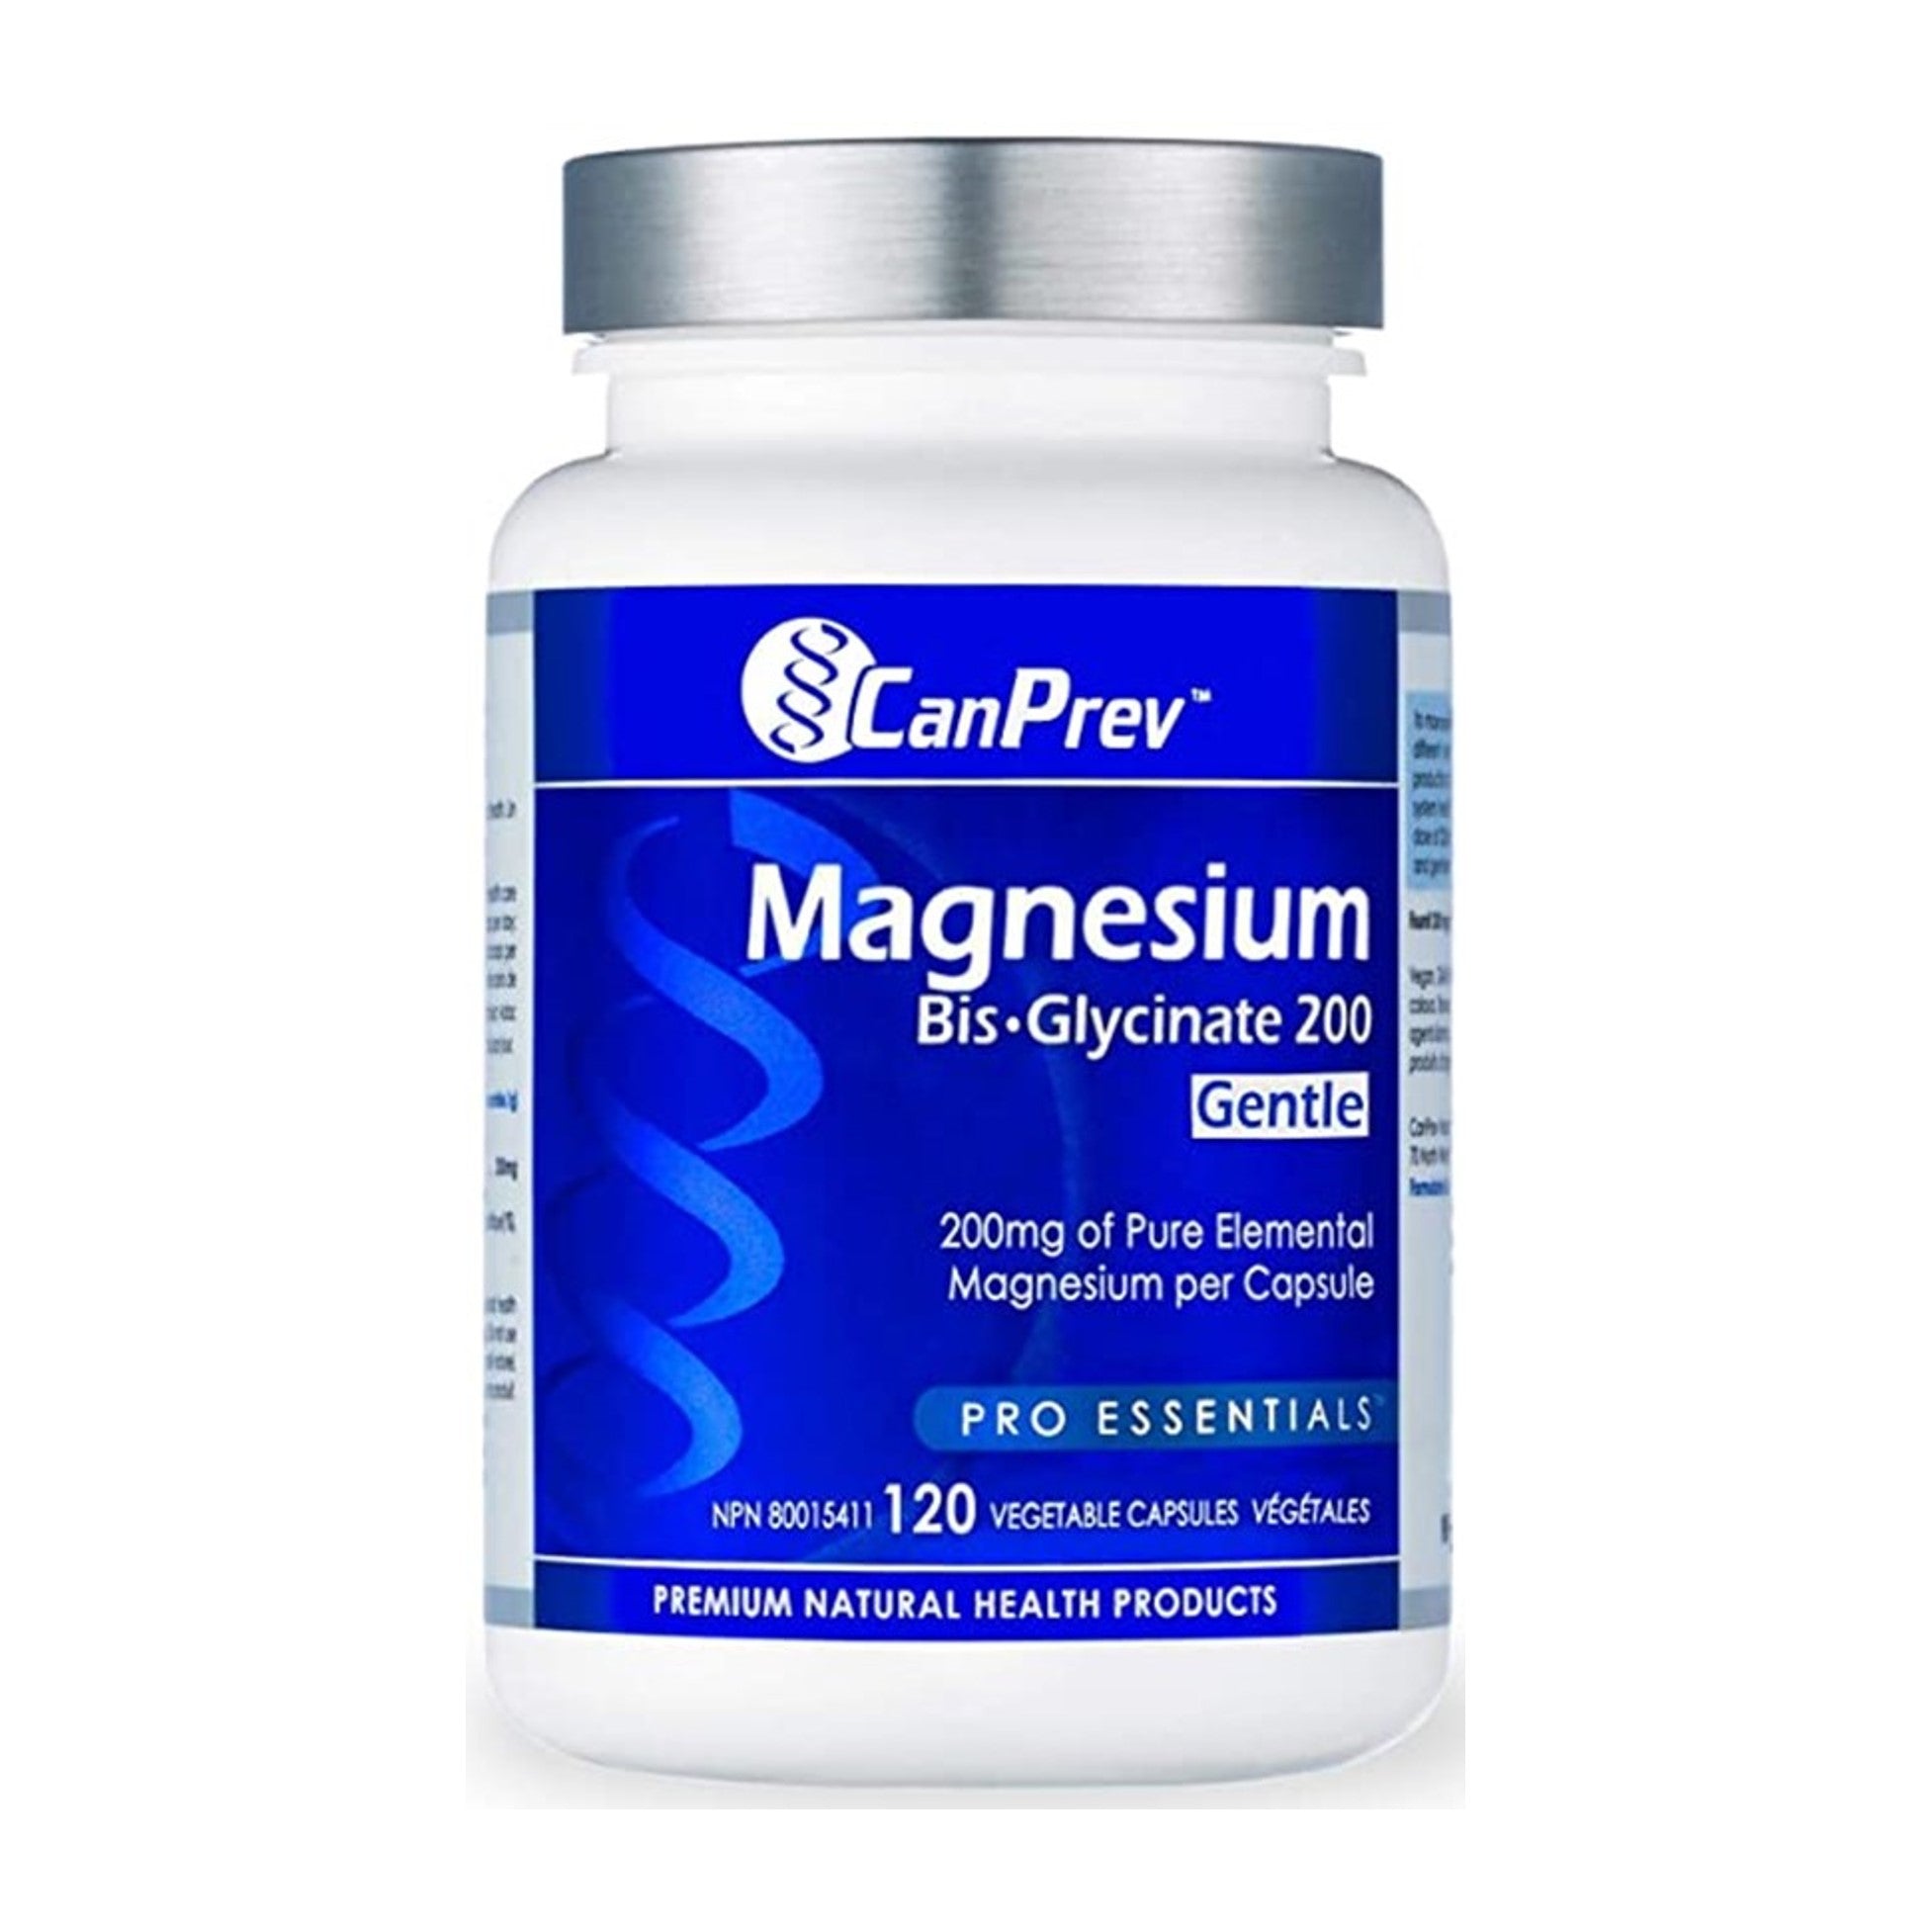 CanPrev Magnesium Bis-Glycinate 200 x120 Vegan Caps.